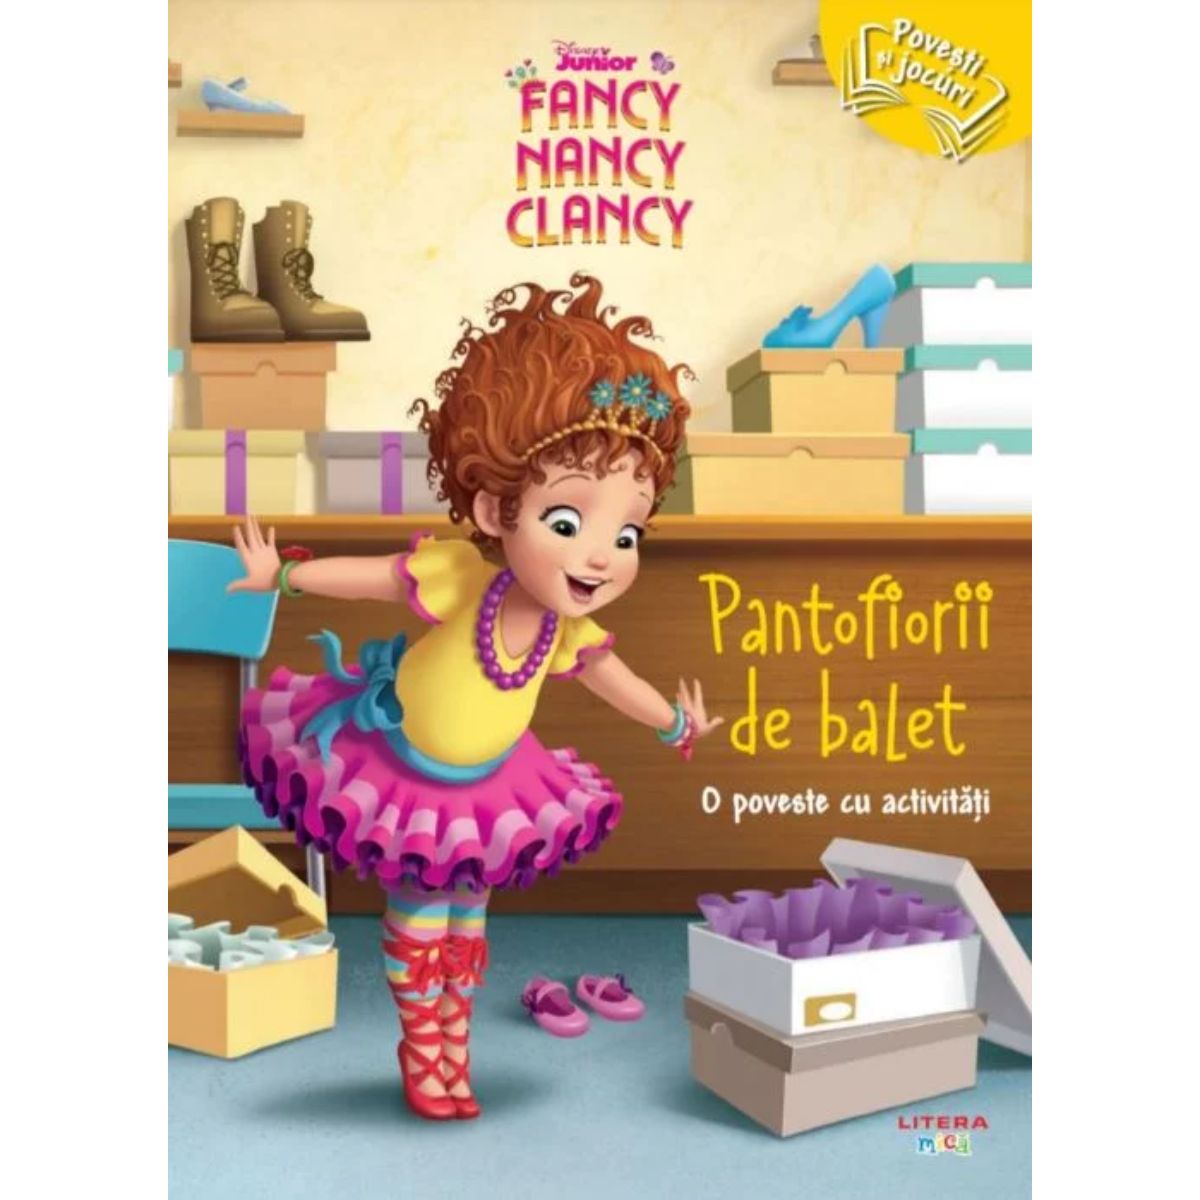 Disney Junior Fancy Nancy Clancy, Pantofiorii de balet